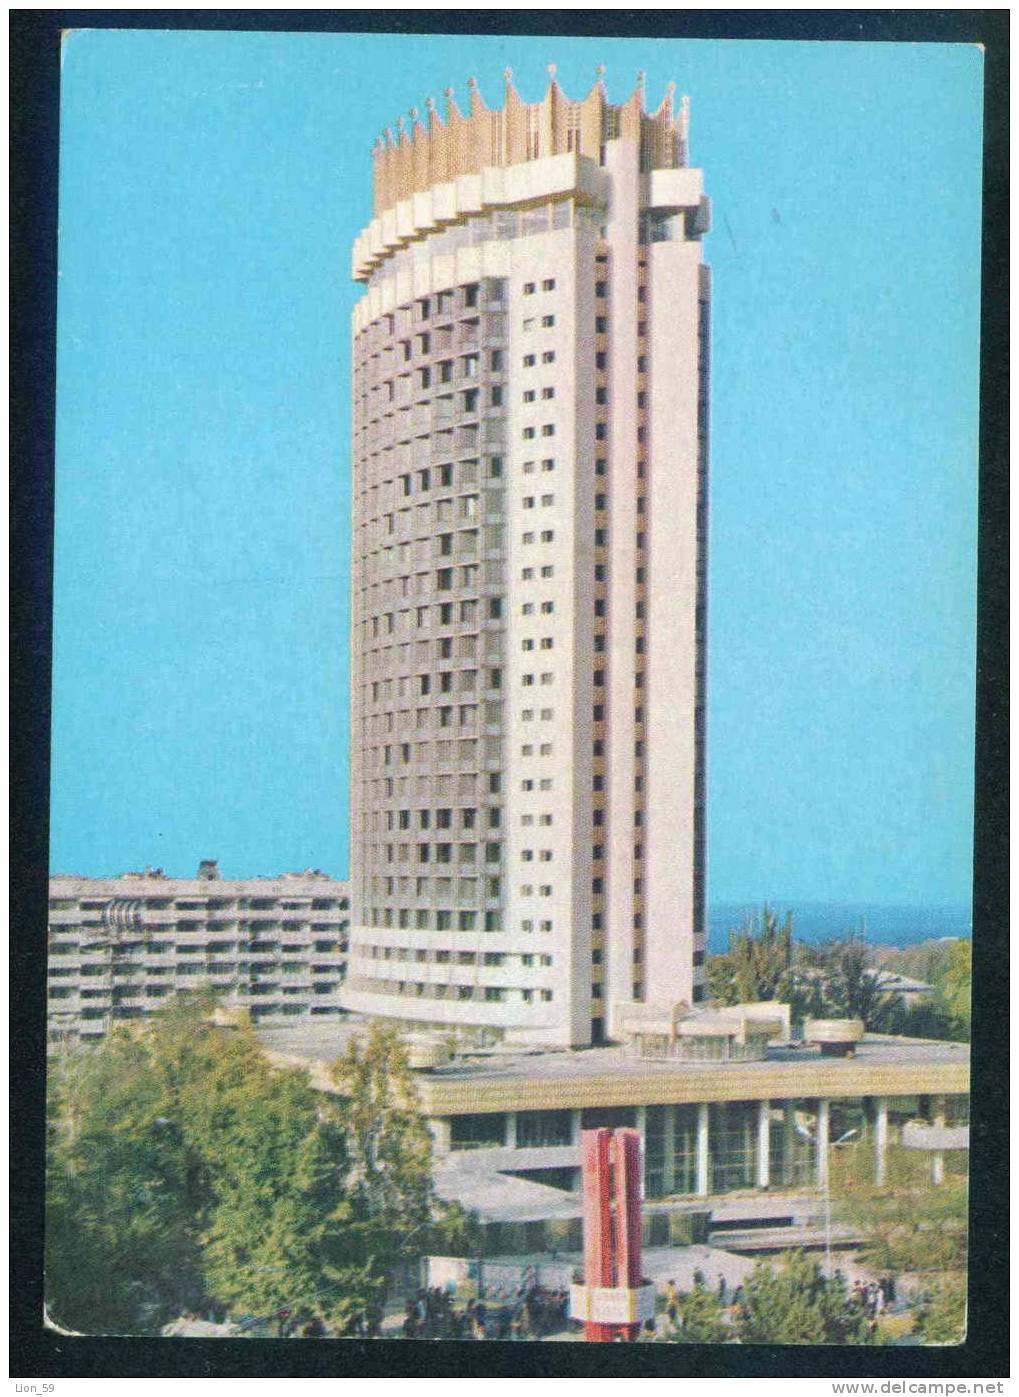 Almaty / Alma-Ata - HOTEL KAZAKHSTAN - Stationary Kazakhstan 108208 - Kazakhstan